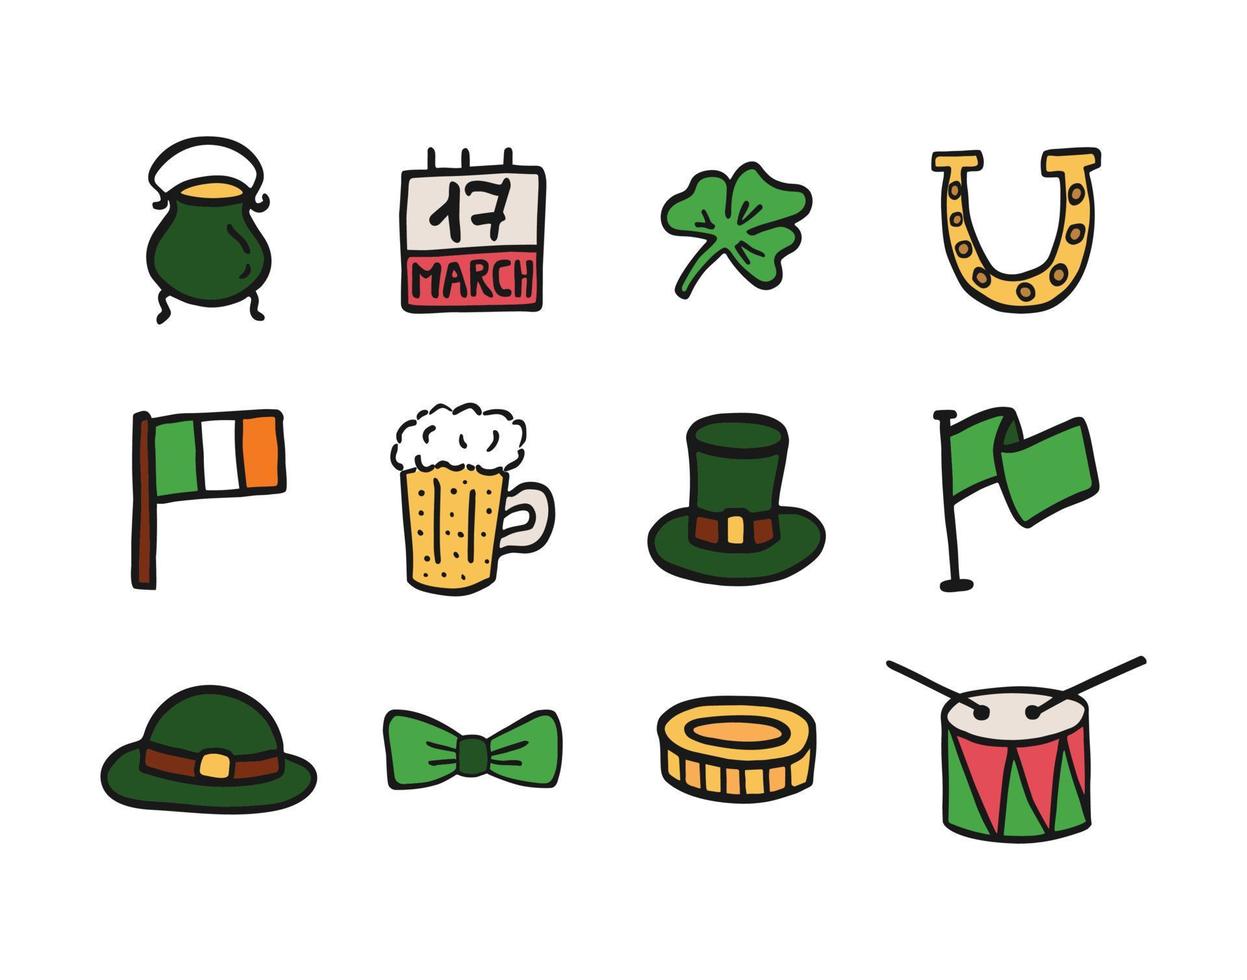 Reihe von Vektorsymbolen für den St. Patrick's Day. hand gezeichnete isolierte bilder auf dem weißen hintergrund. Feier am 17. März. Klee, Bier, irische Flagge, Münze, Trommel vektor